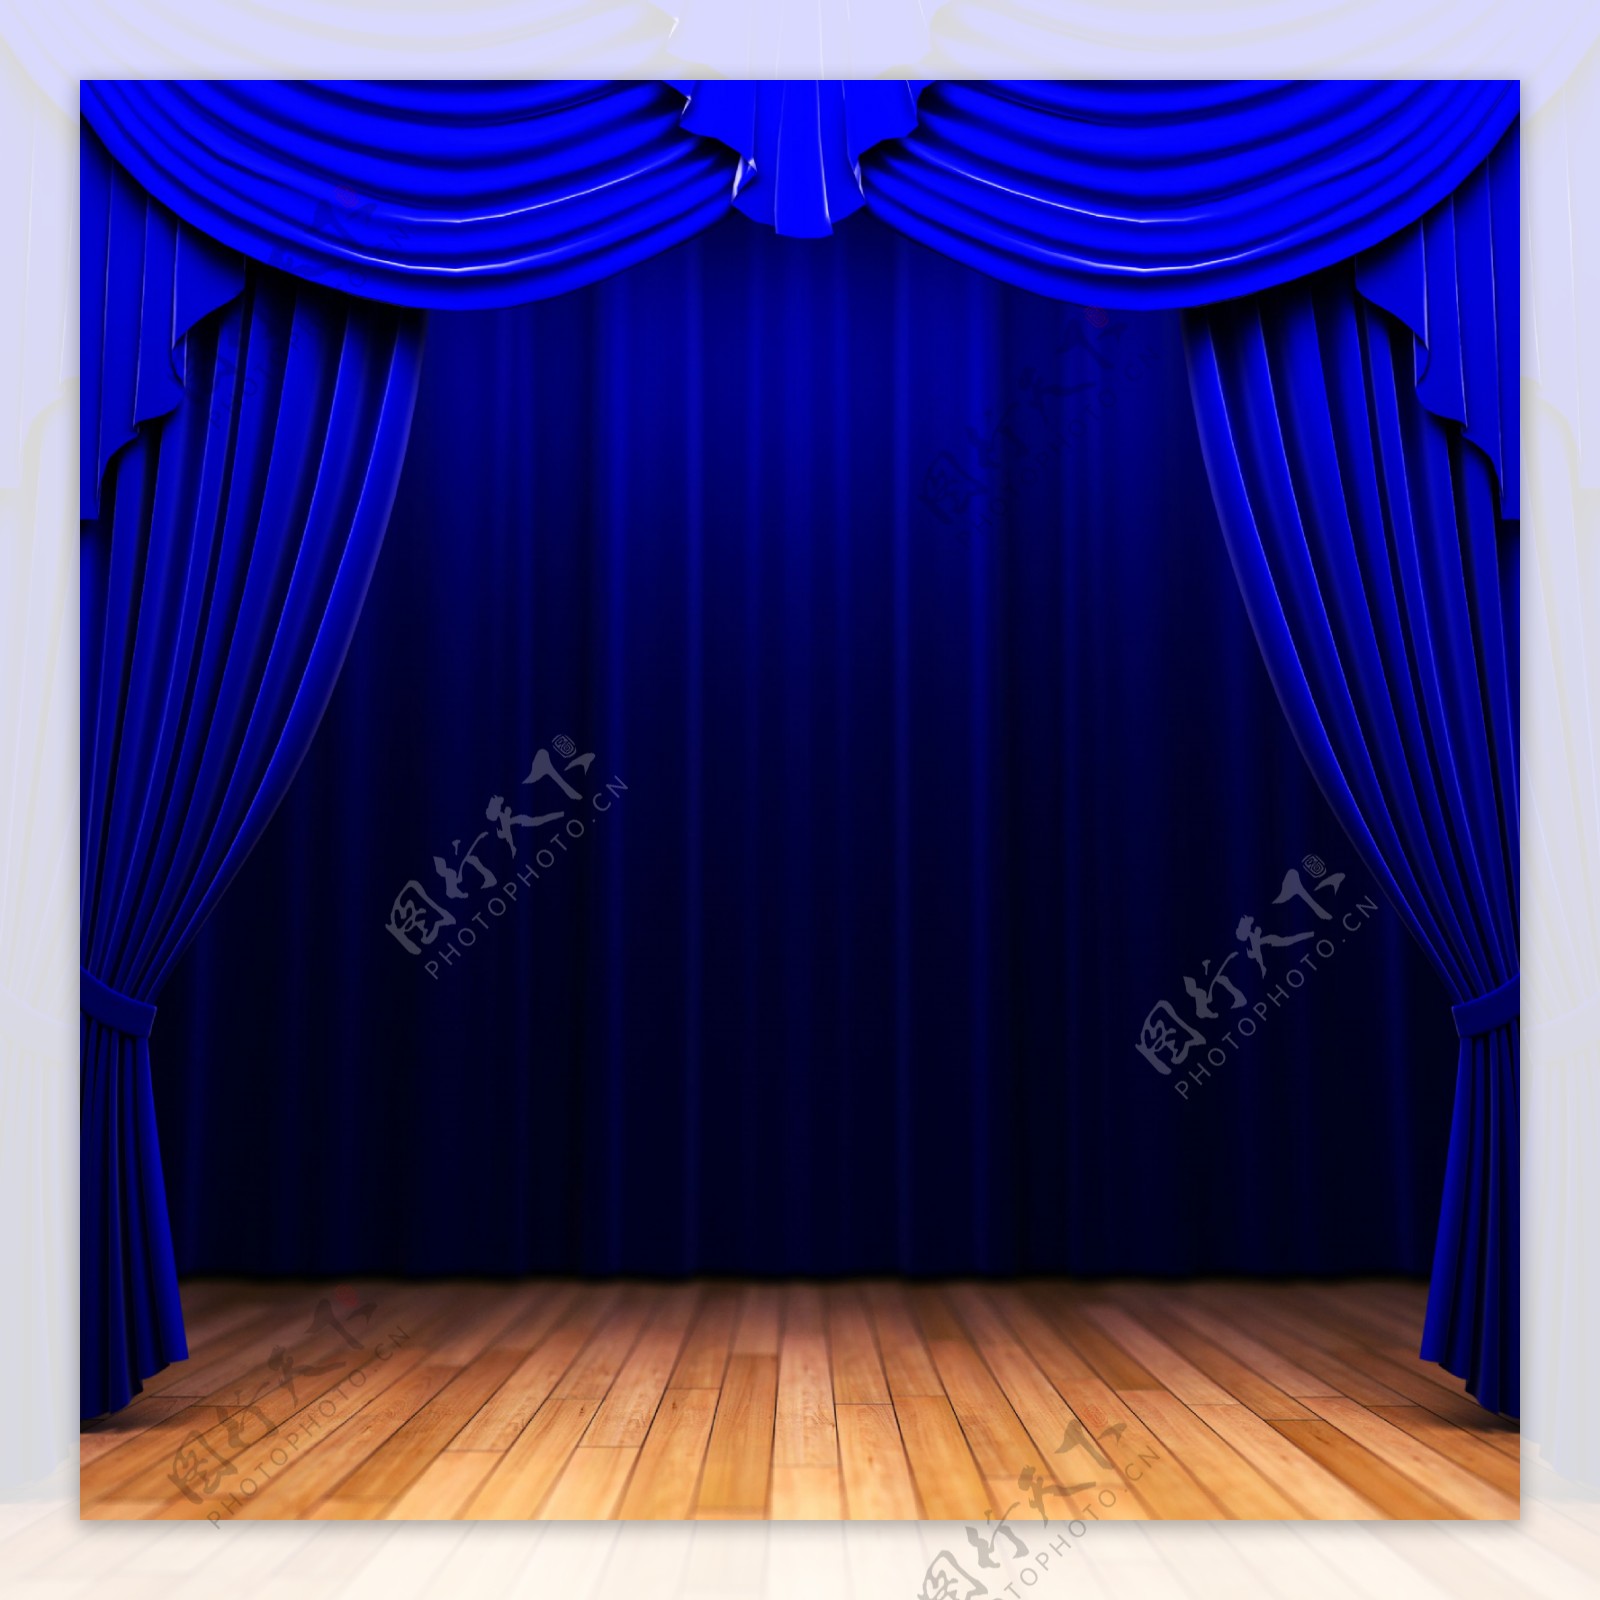 蓝色舞台幕布图片